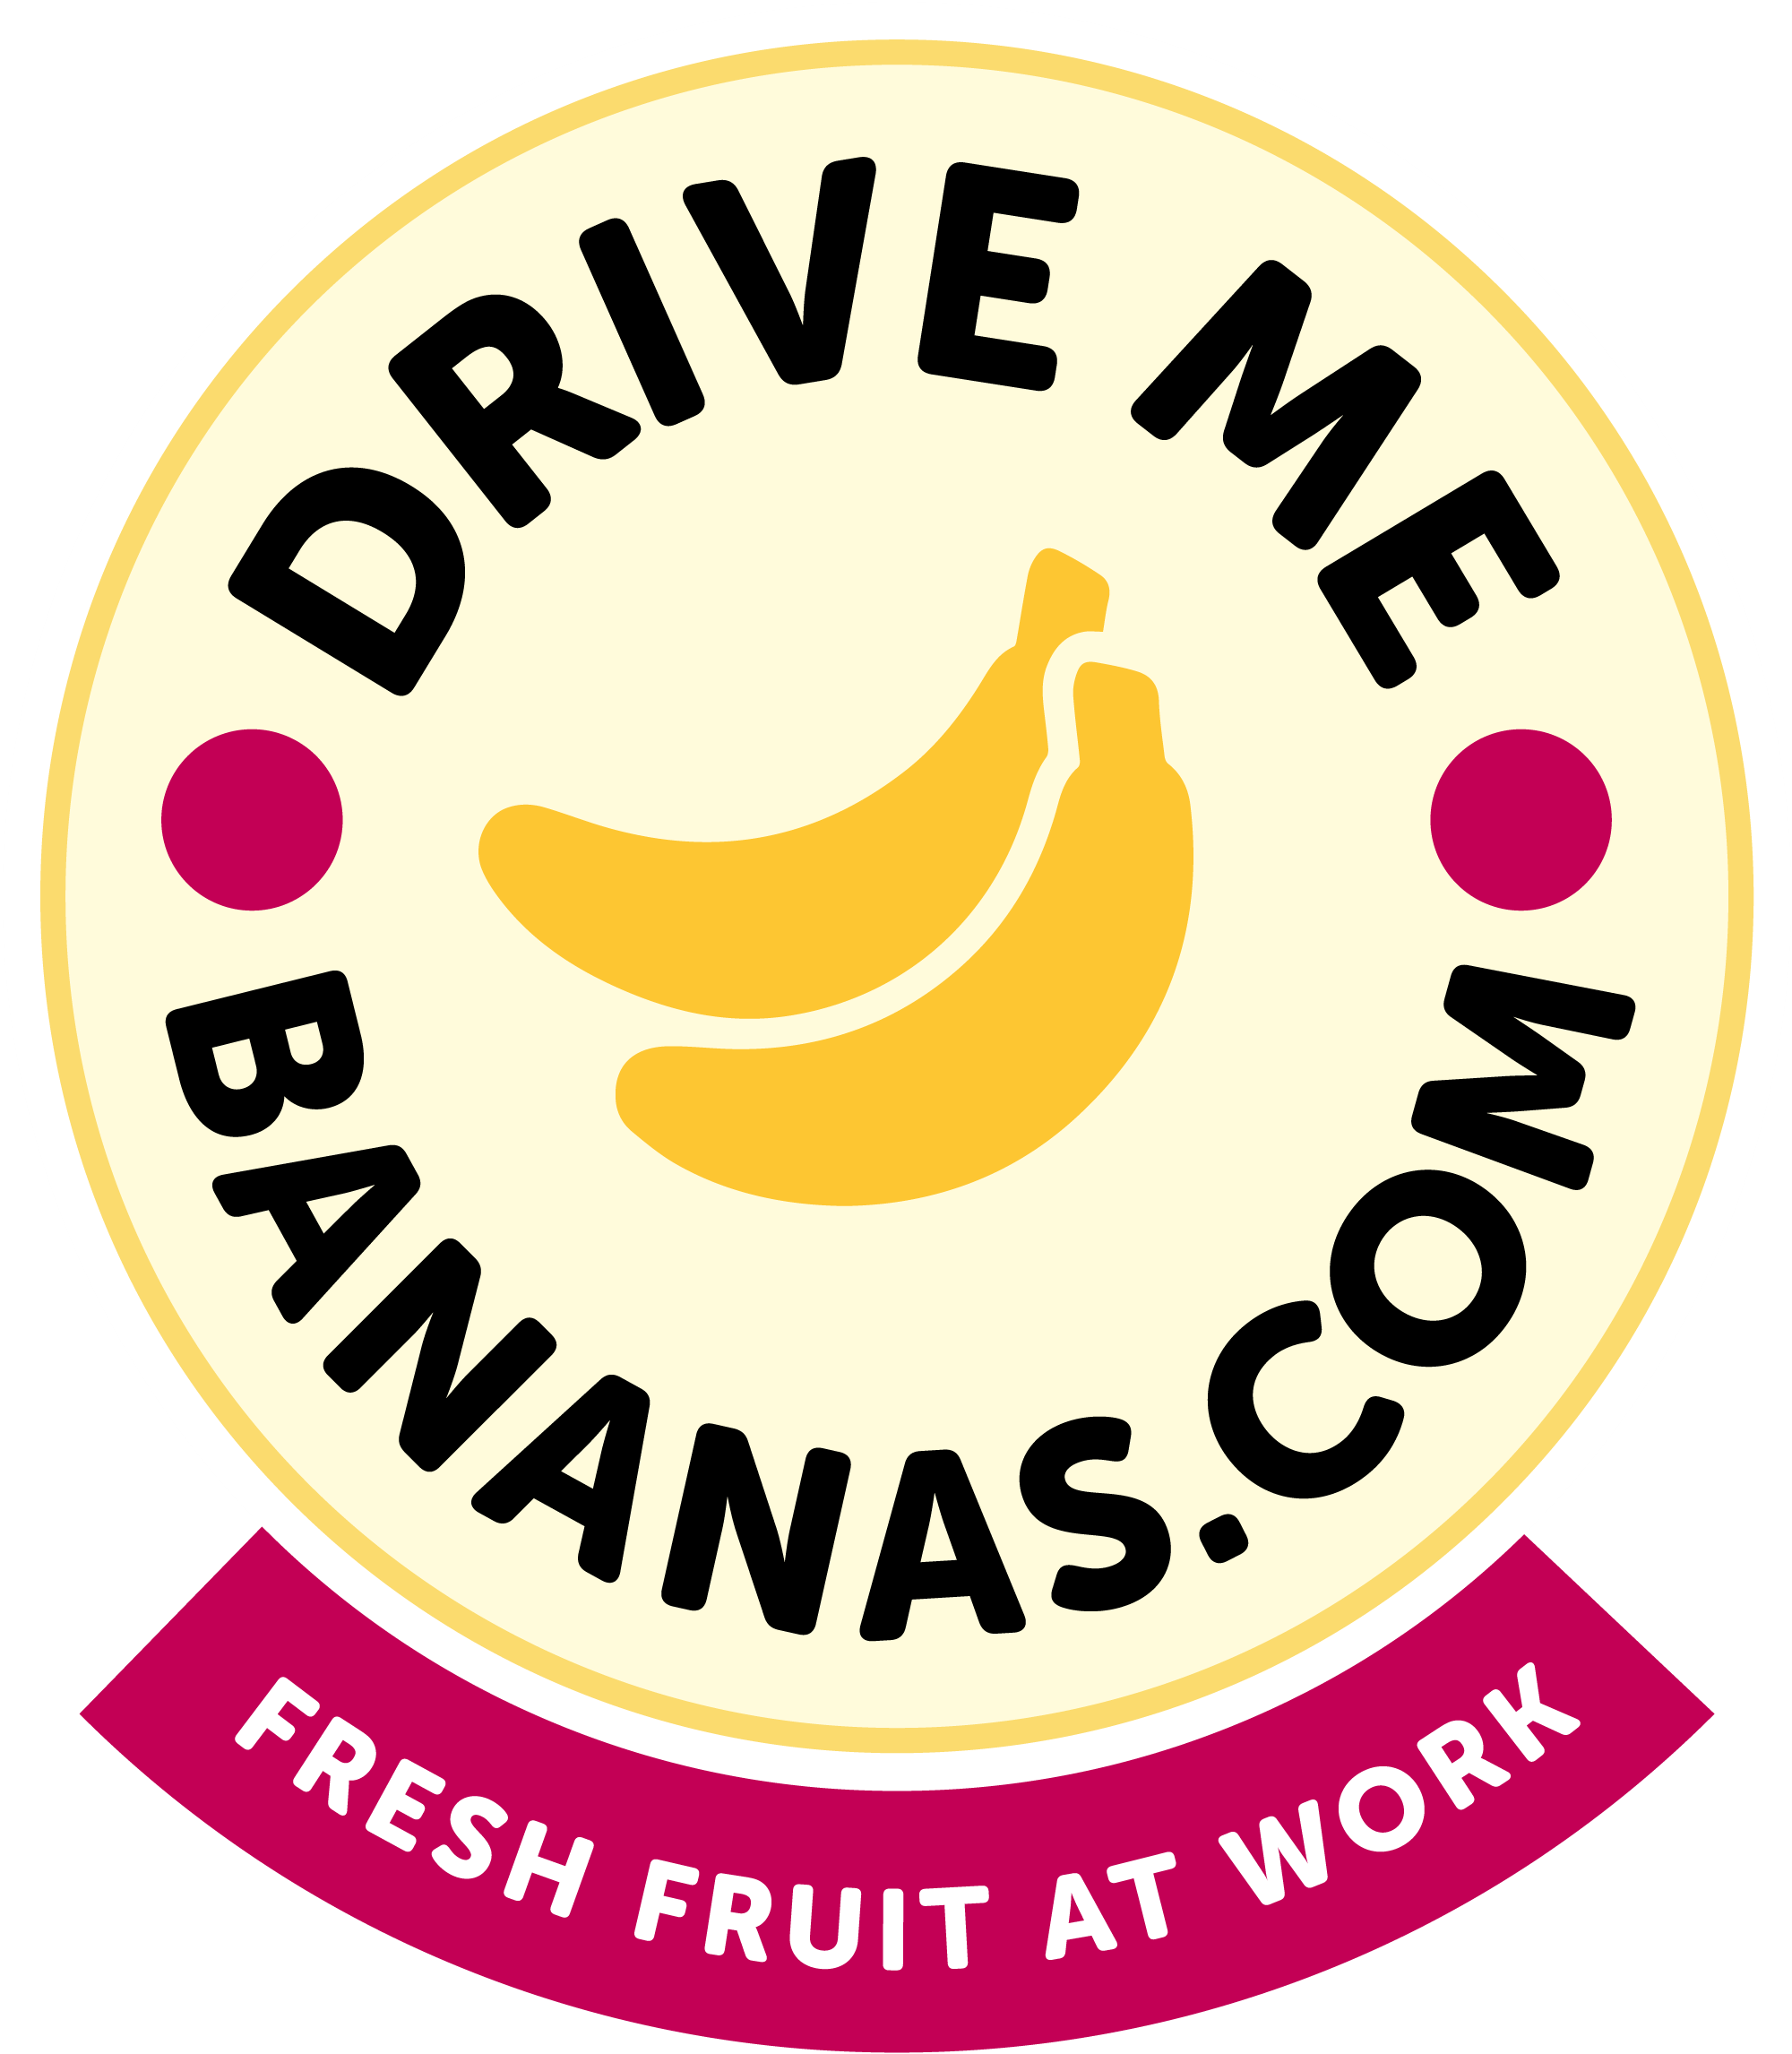 Drive Me Bananas